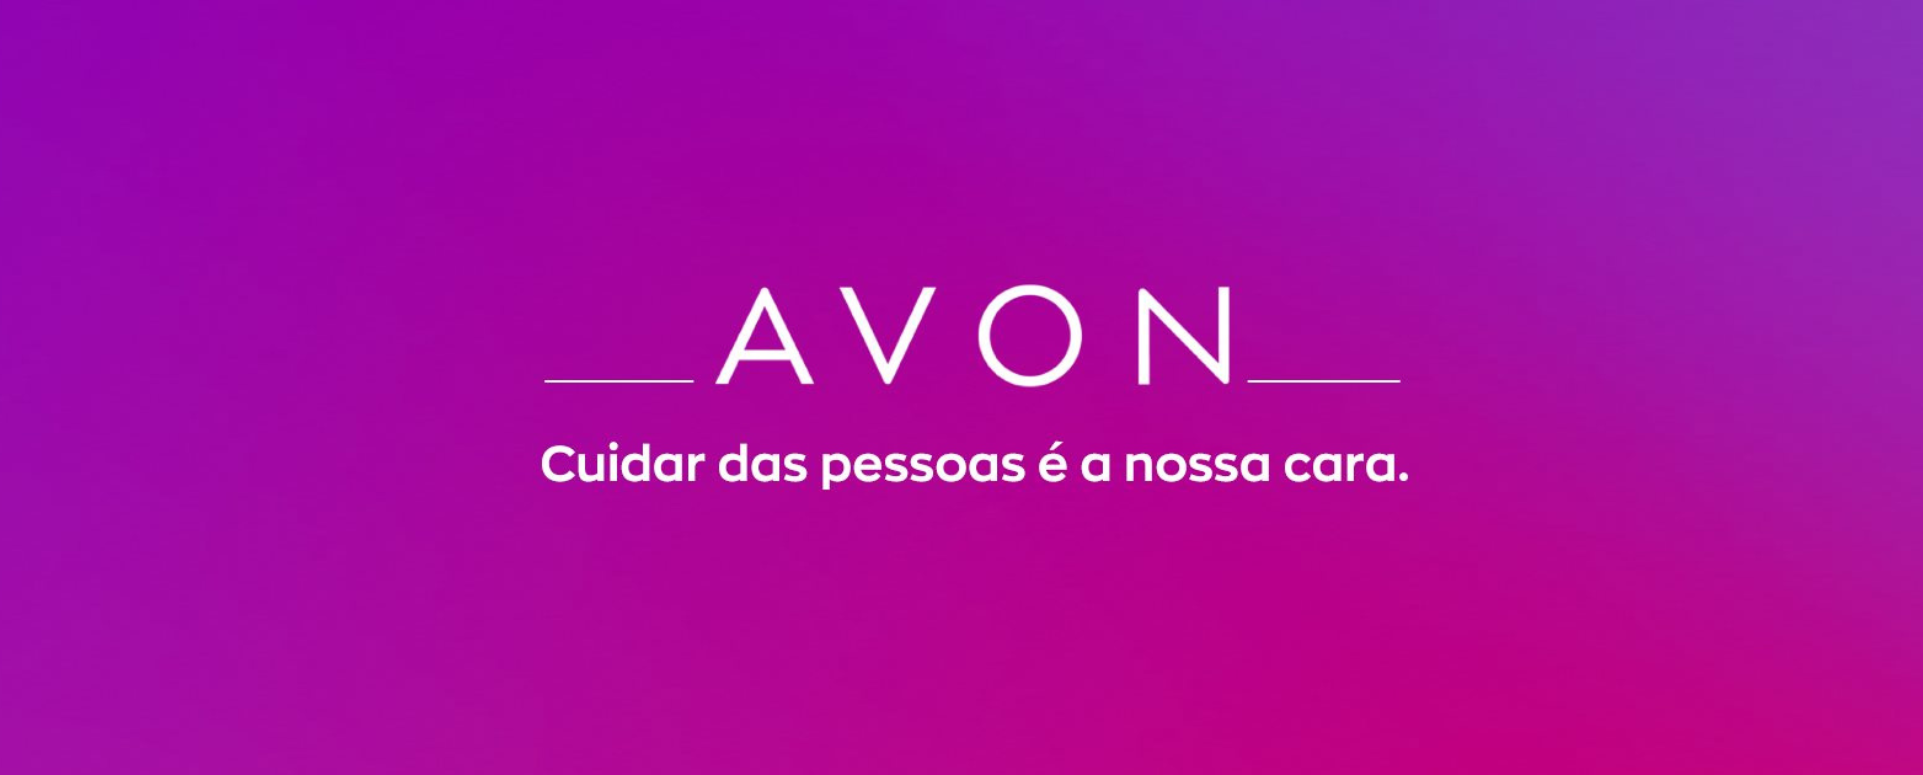 Avon investe em Centro de Inovação Global no Brasil - ABRAMARK